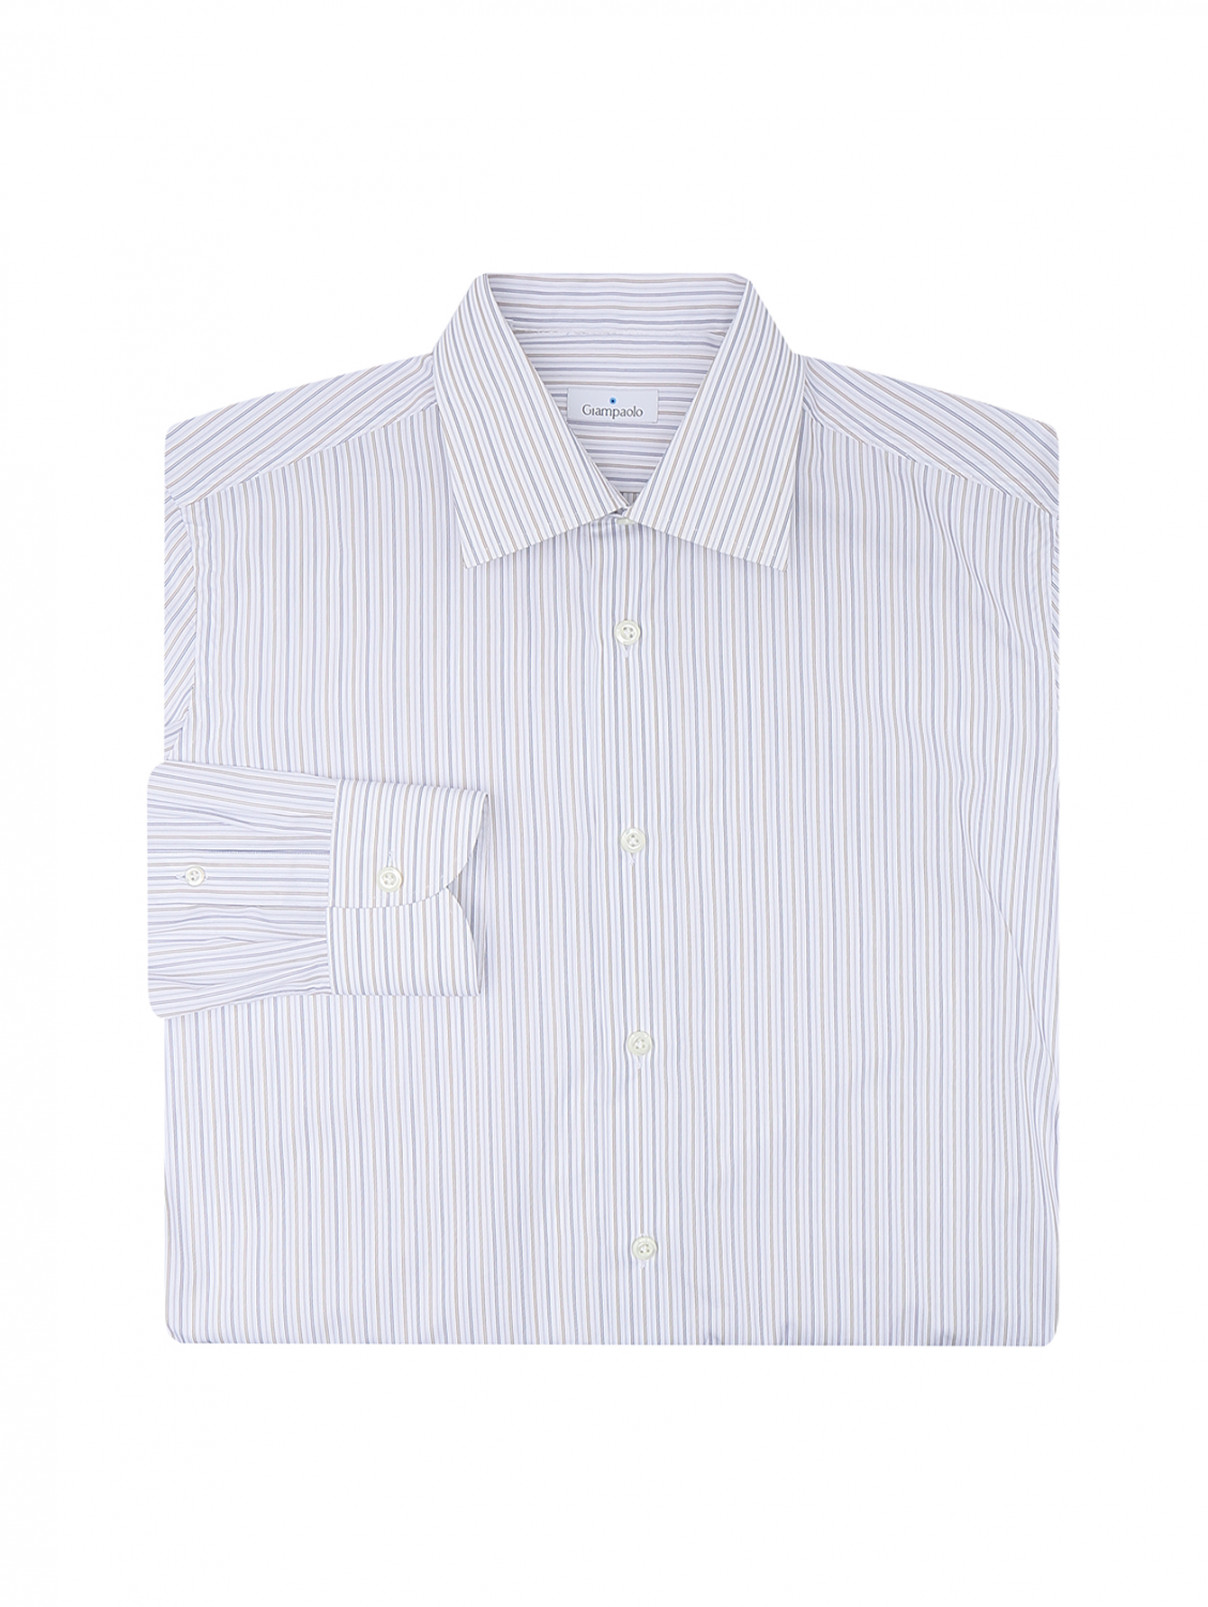 Рубашка из хлопка в полоску Giampaolo  –  Общий вид  – Цвет:  Белый